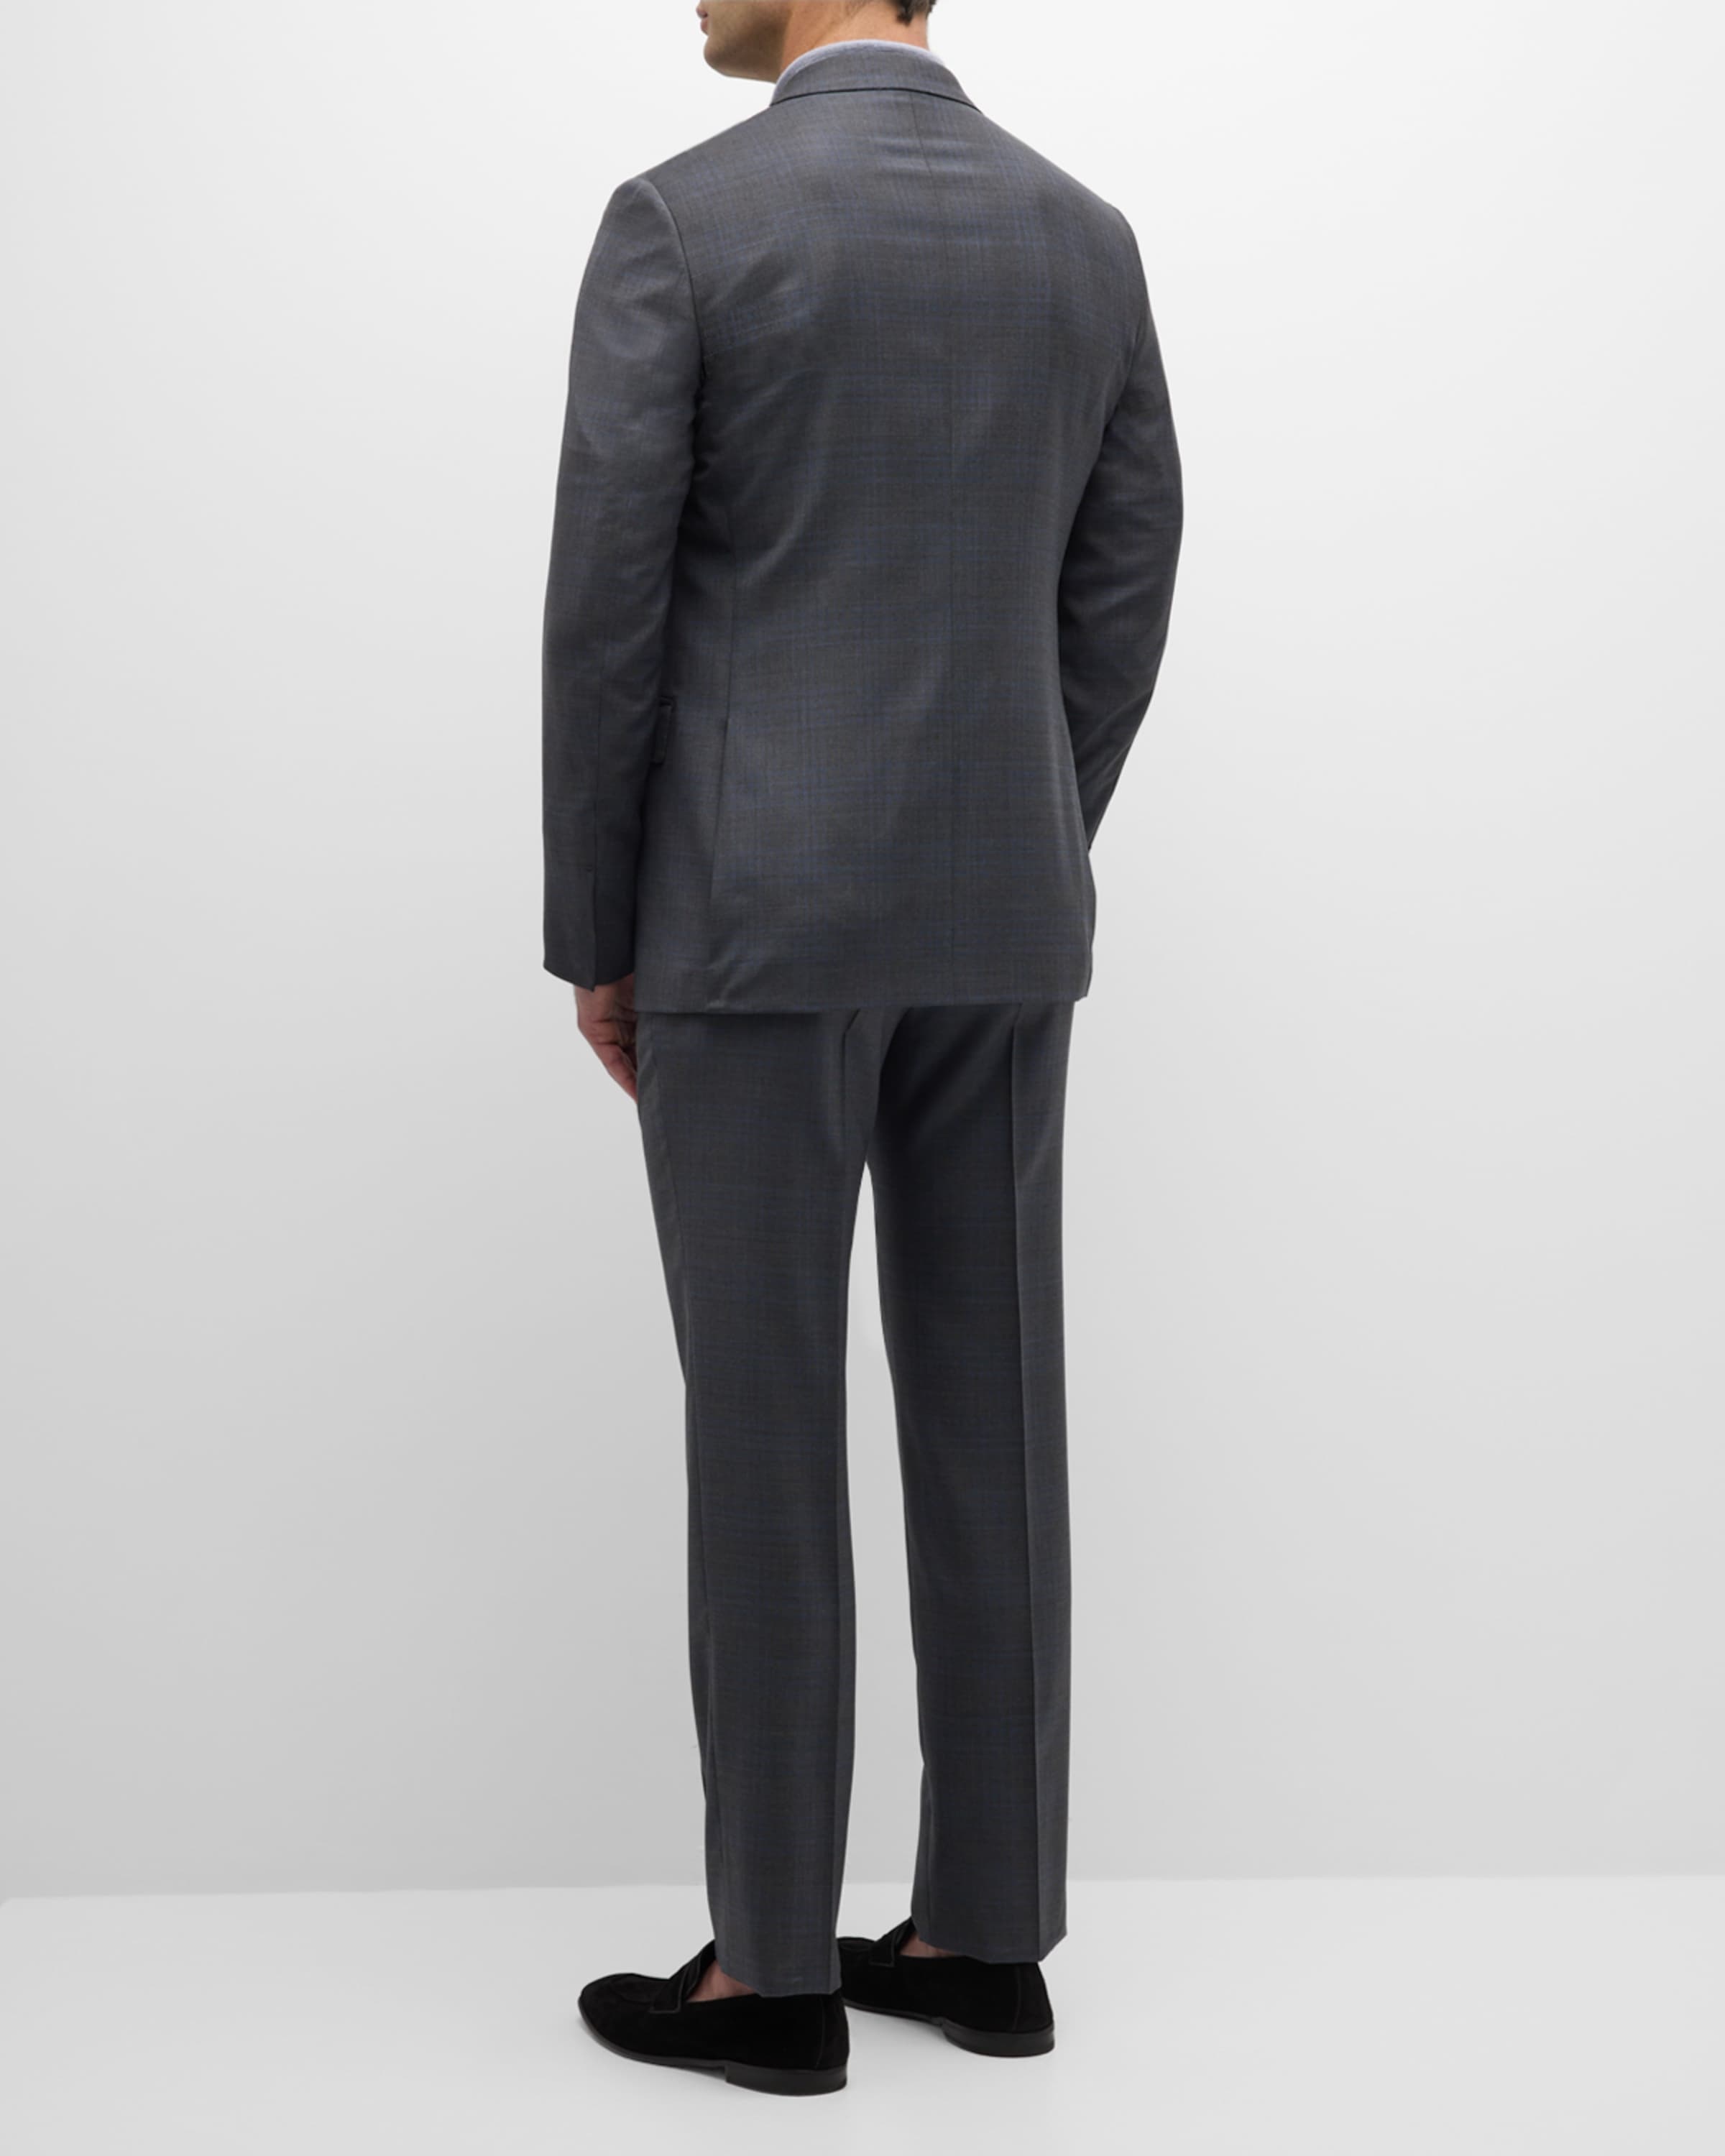 Men's Two-Tone Plaid Wool Suit - 3